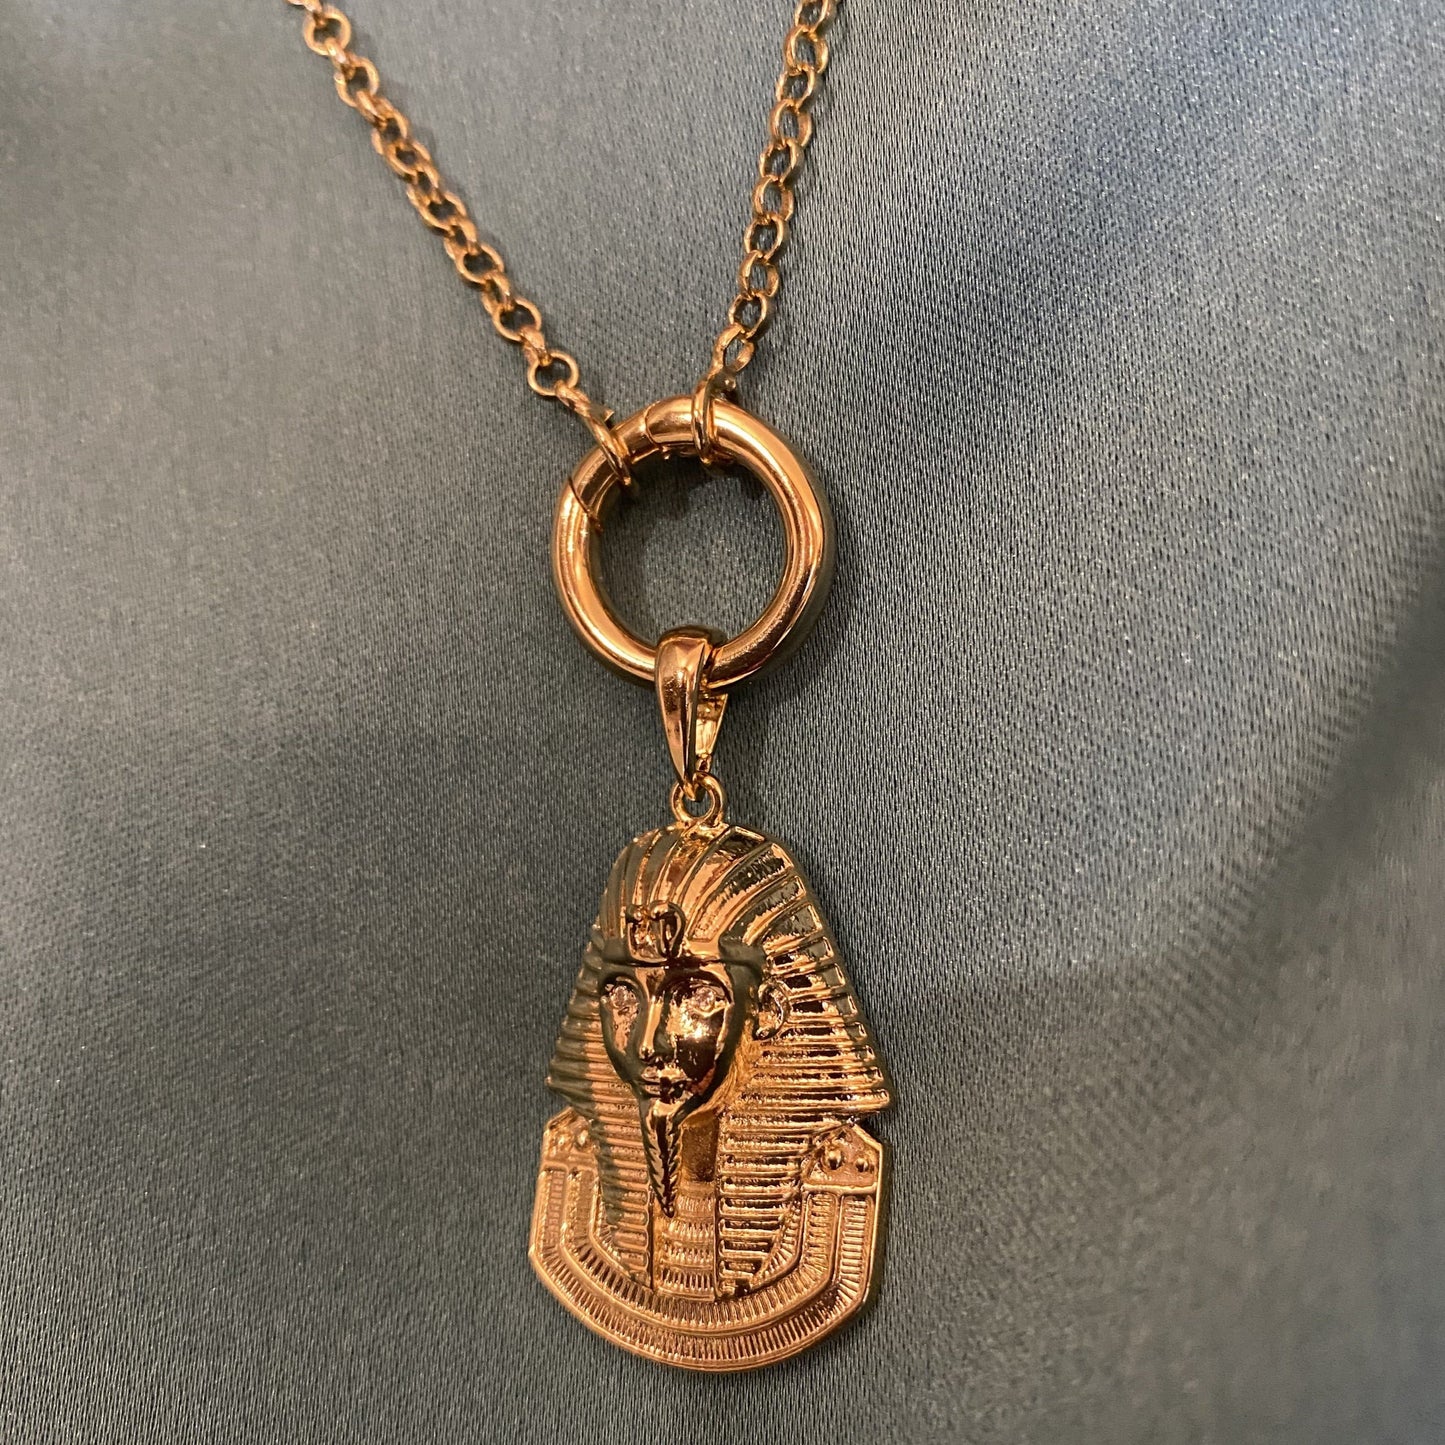 GoldFi 18k Gold Filled Egyptian Pharaoh Pendant